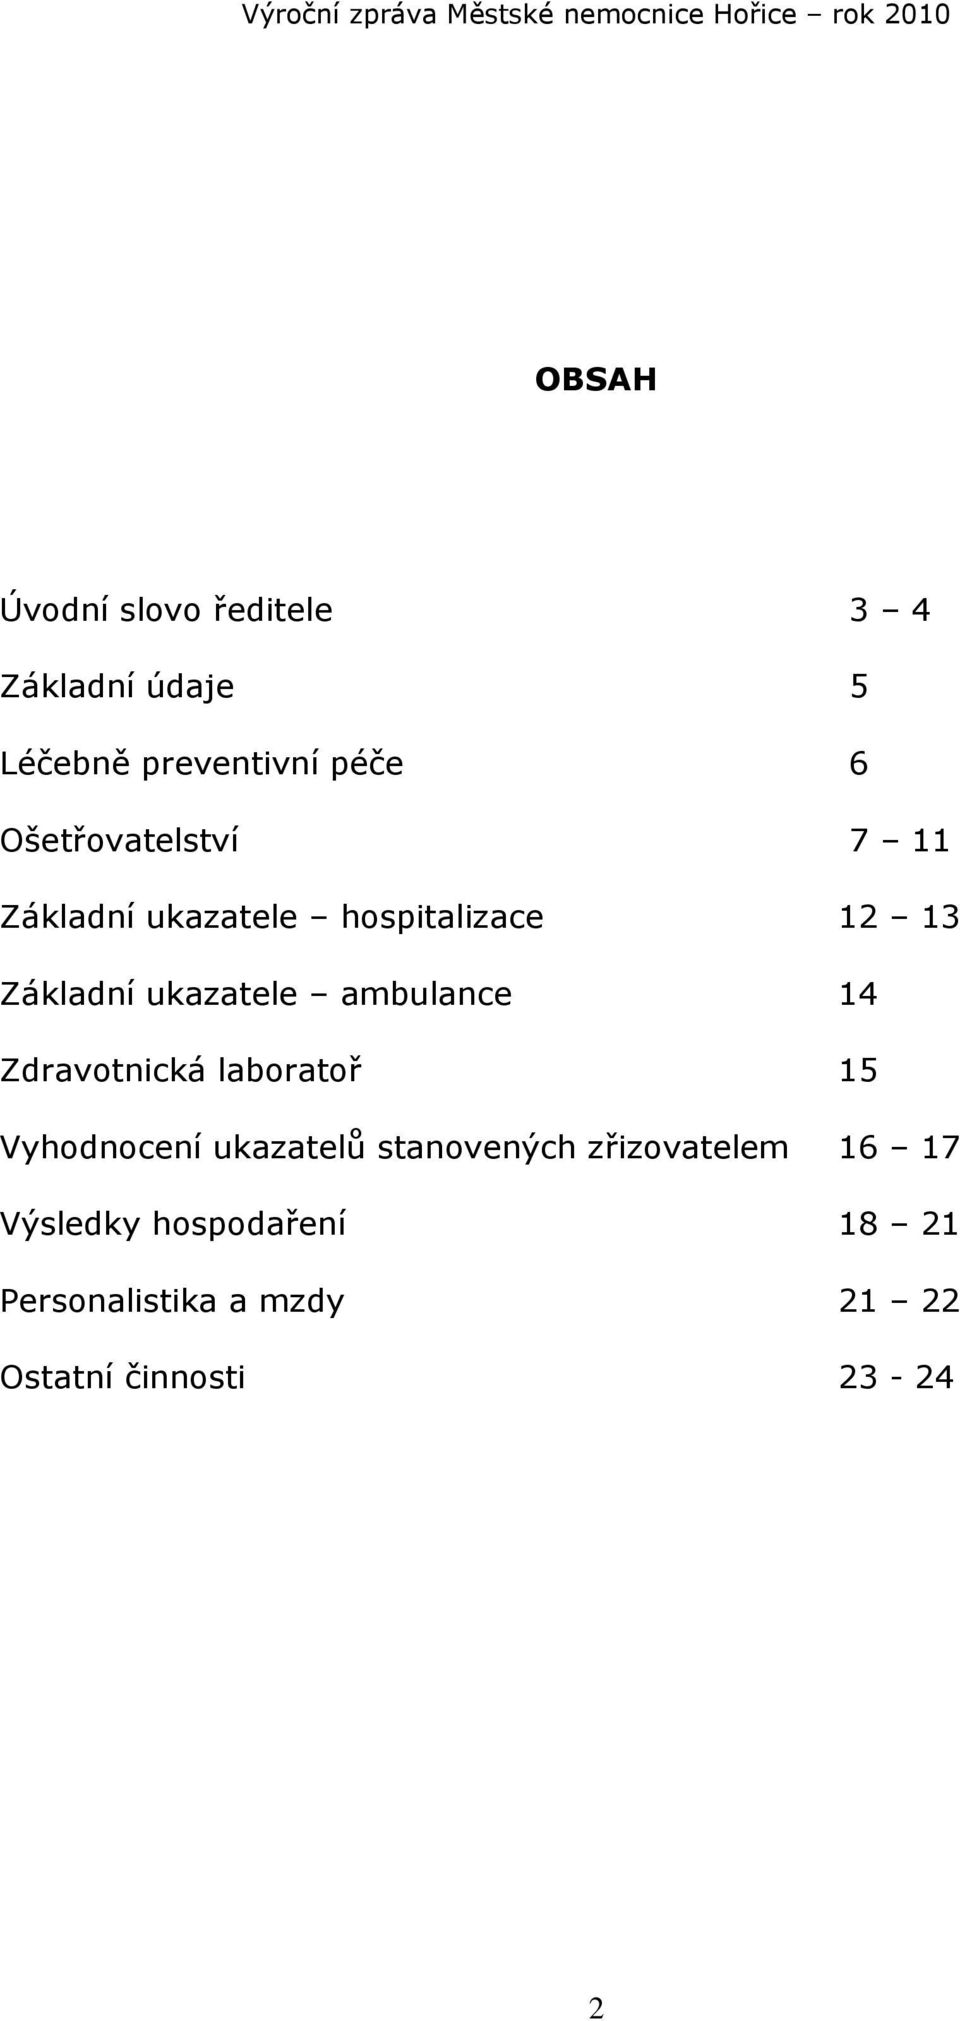 ambulance 14 Zdravotnická laboratoř 15 Vyhodnocení ukazatelů stanovených